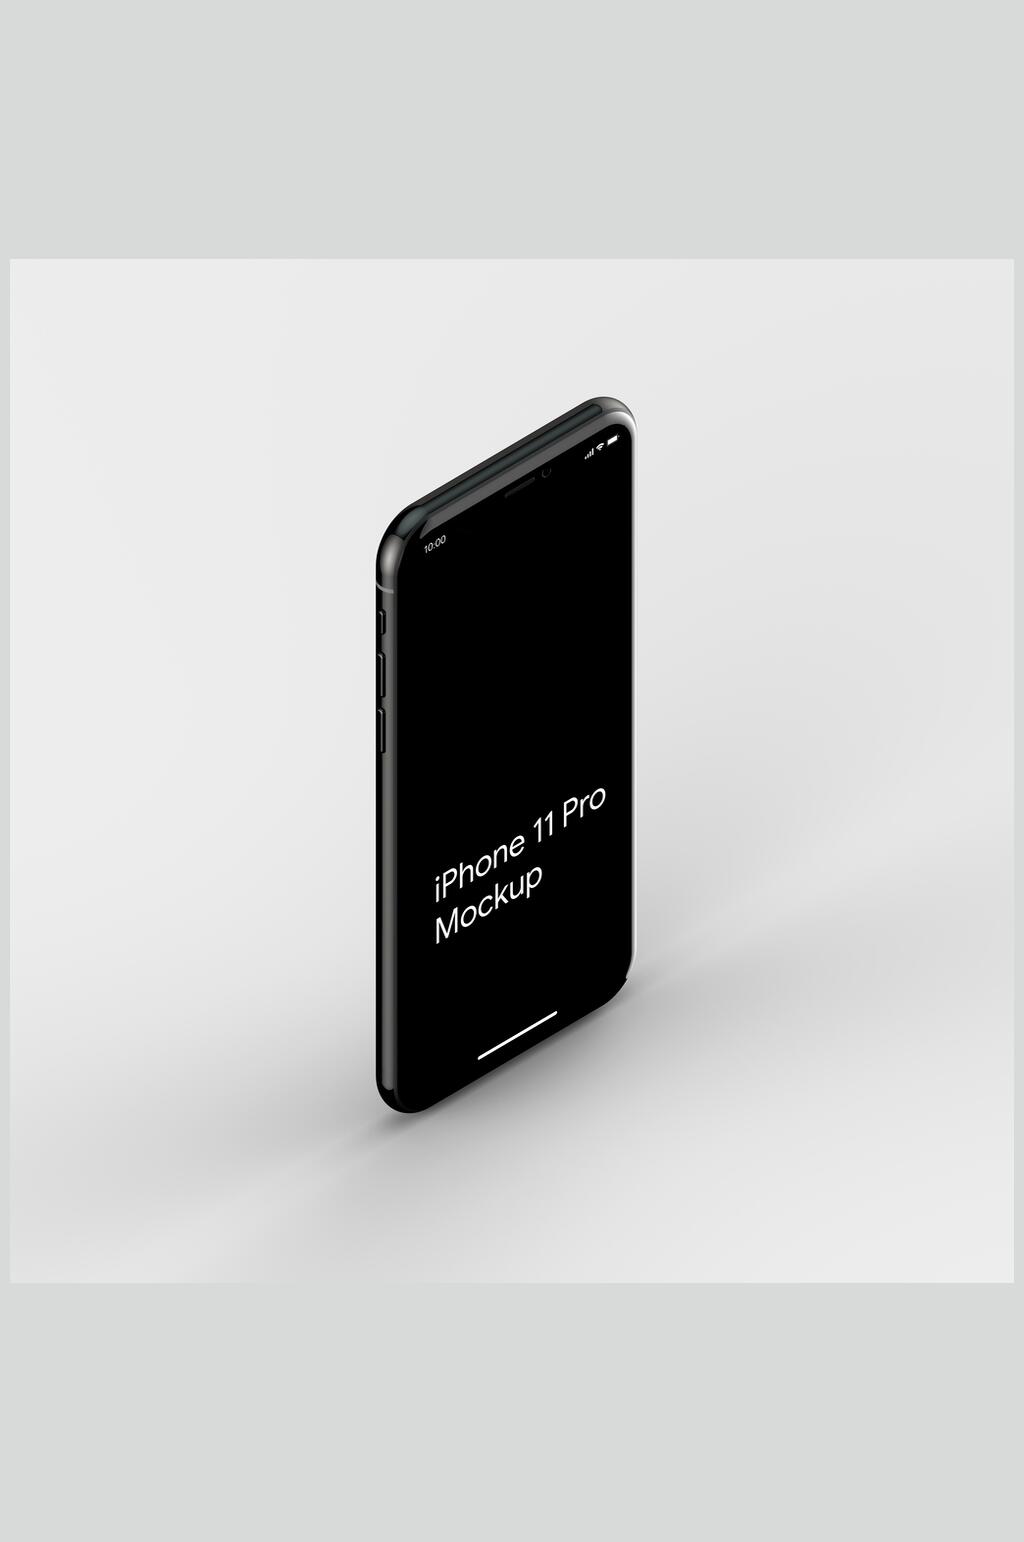 众图网独家提供简约绚烂黑色手机展示屏幕样机素材免费下载,本作品是